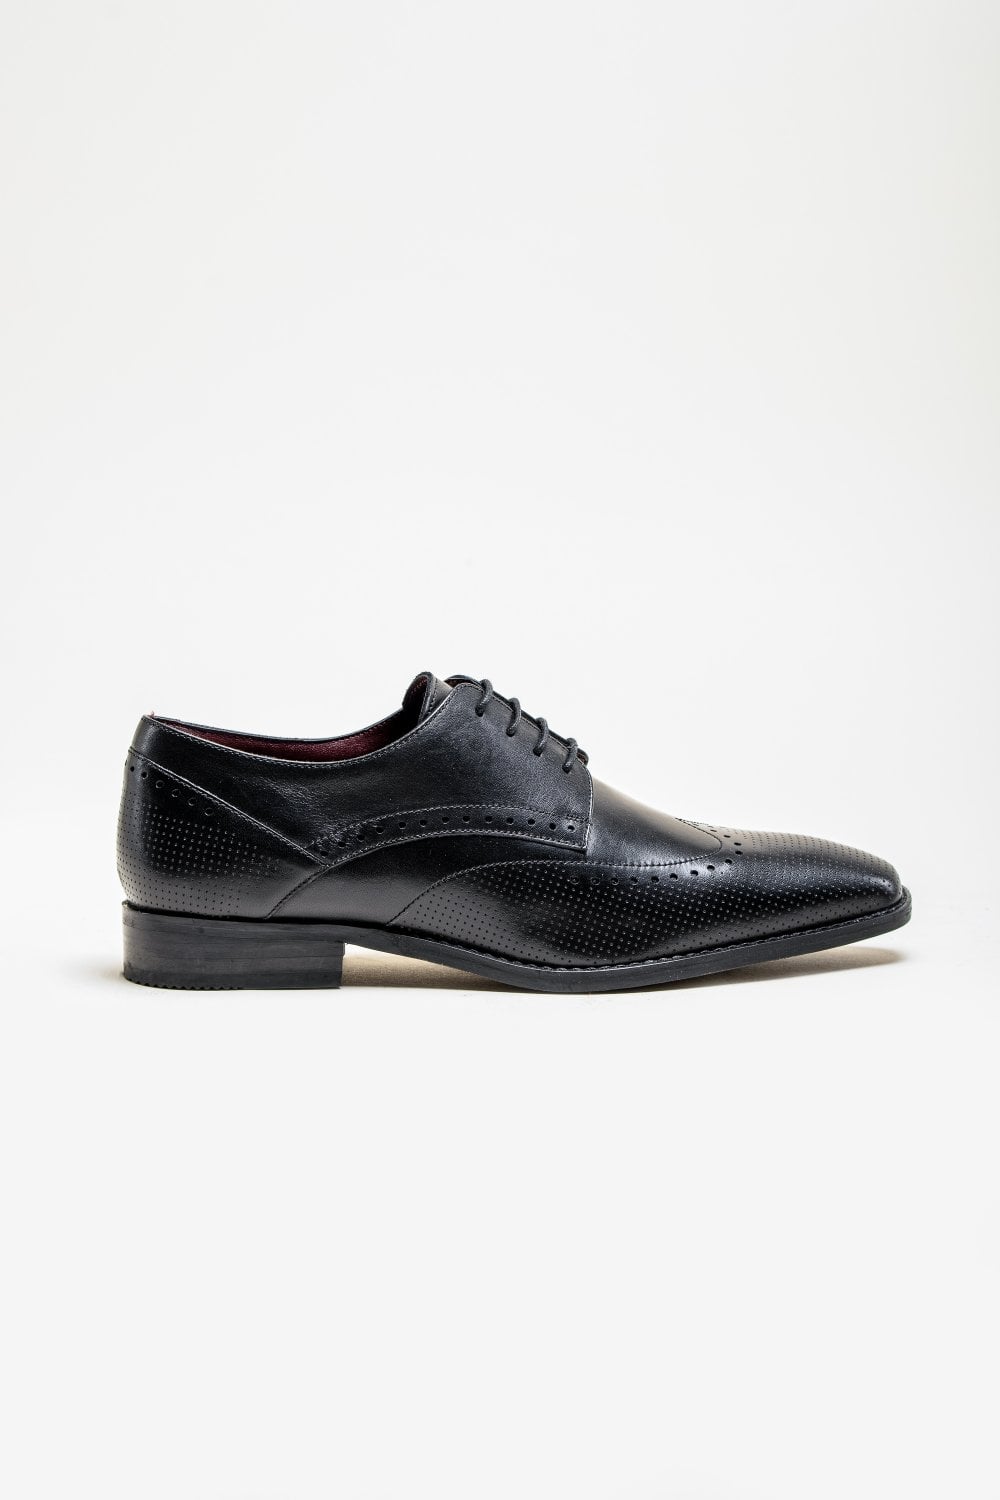 Cavani Lisbon Chaussures noires - Bout d'aile Brogue